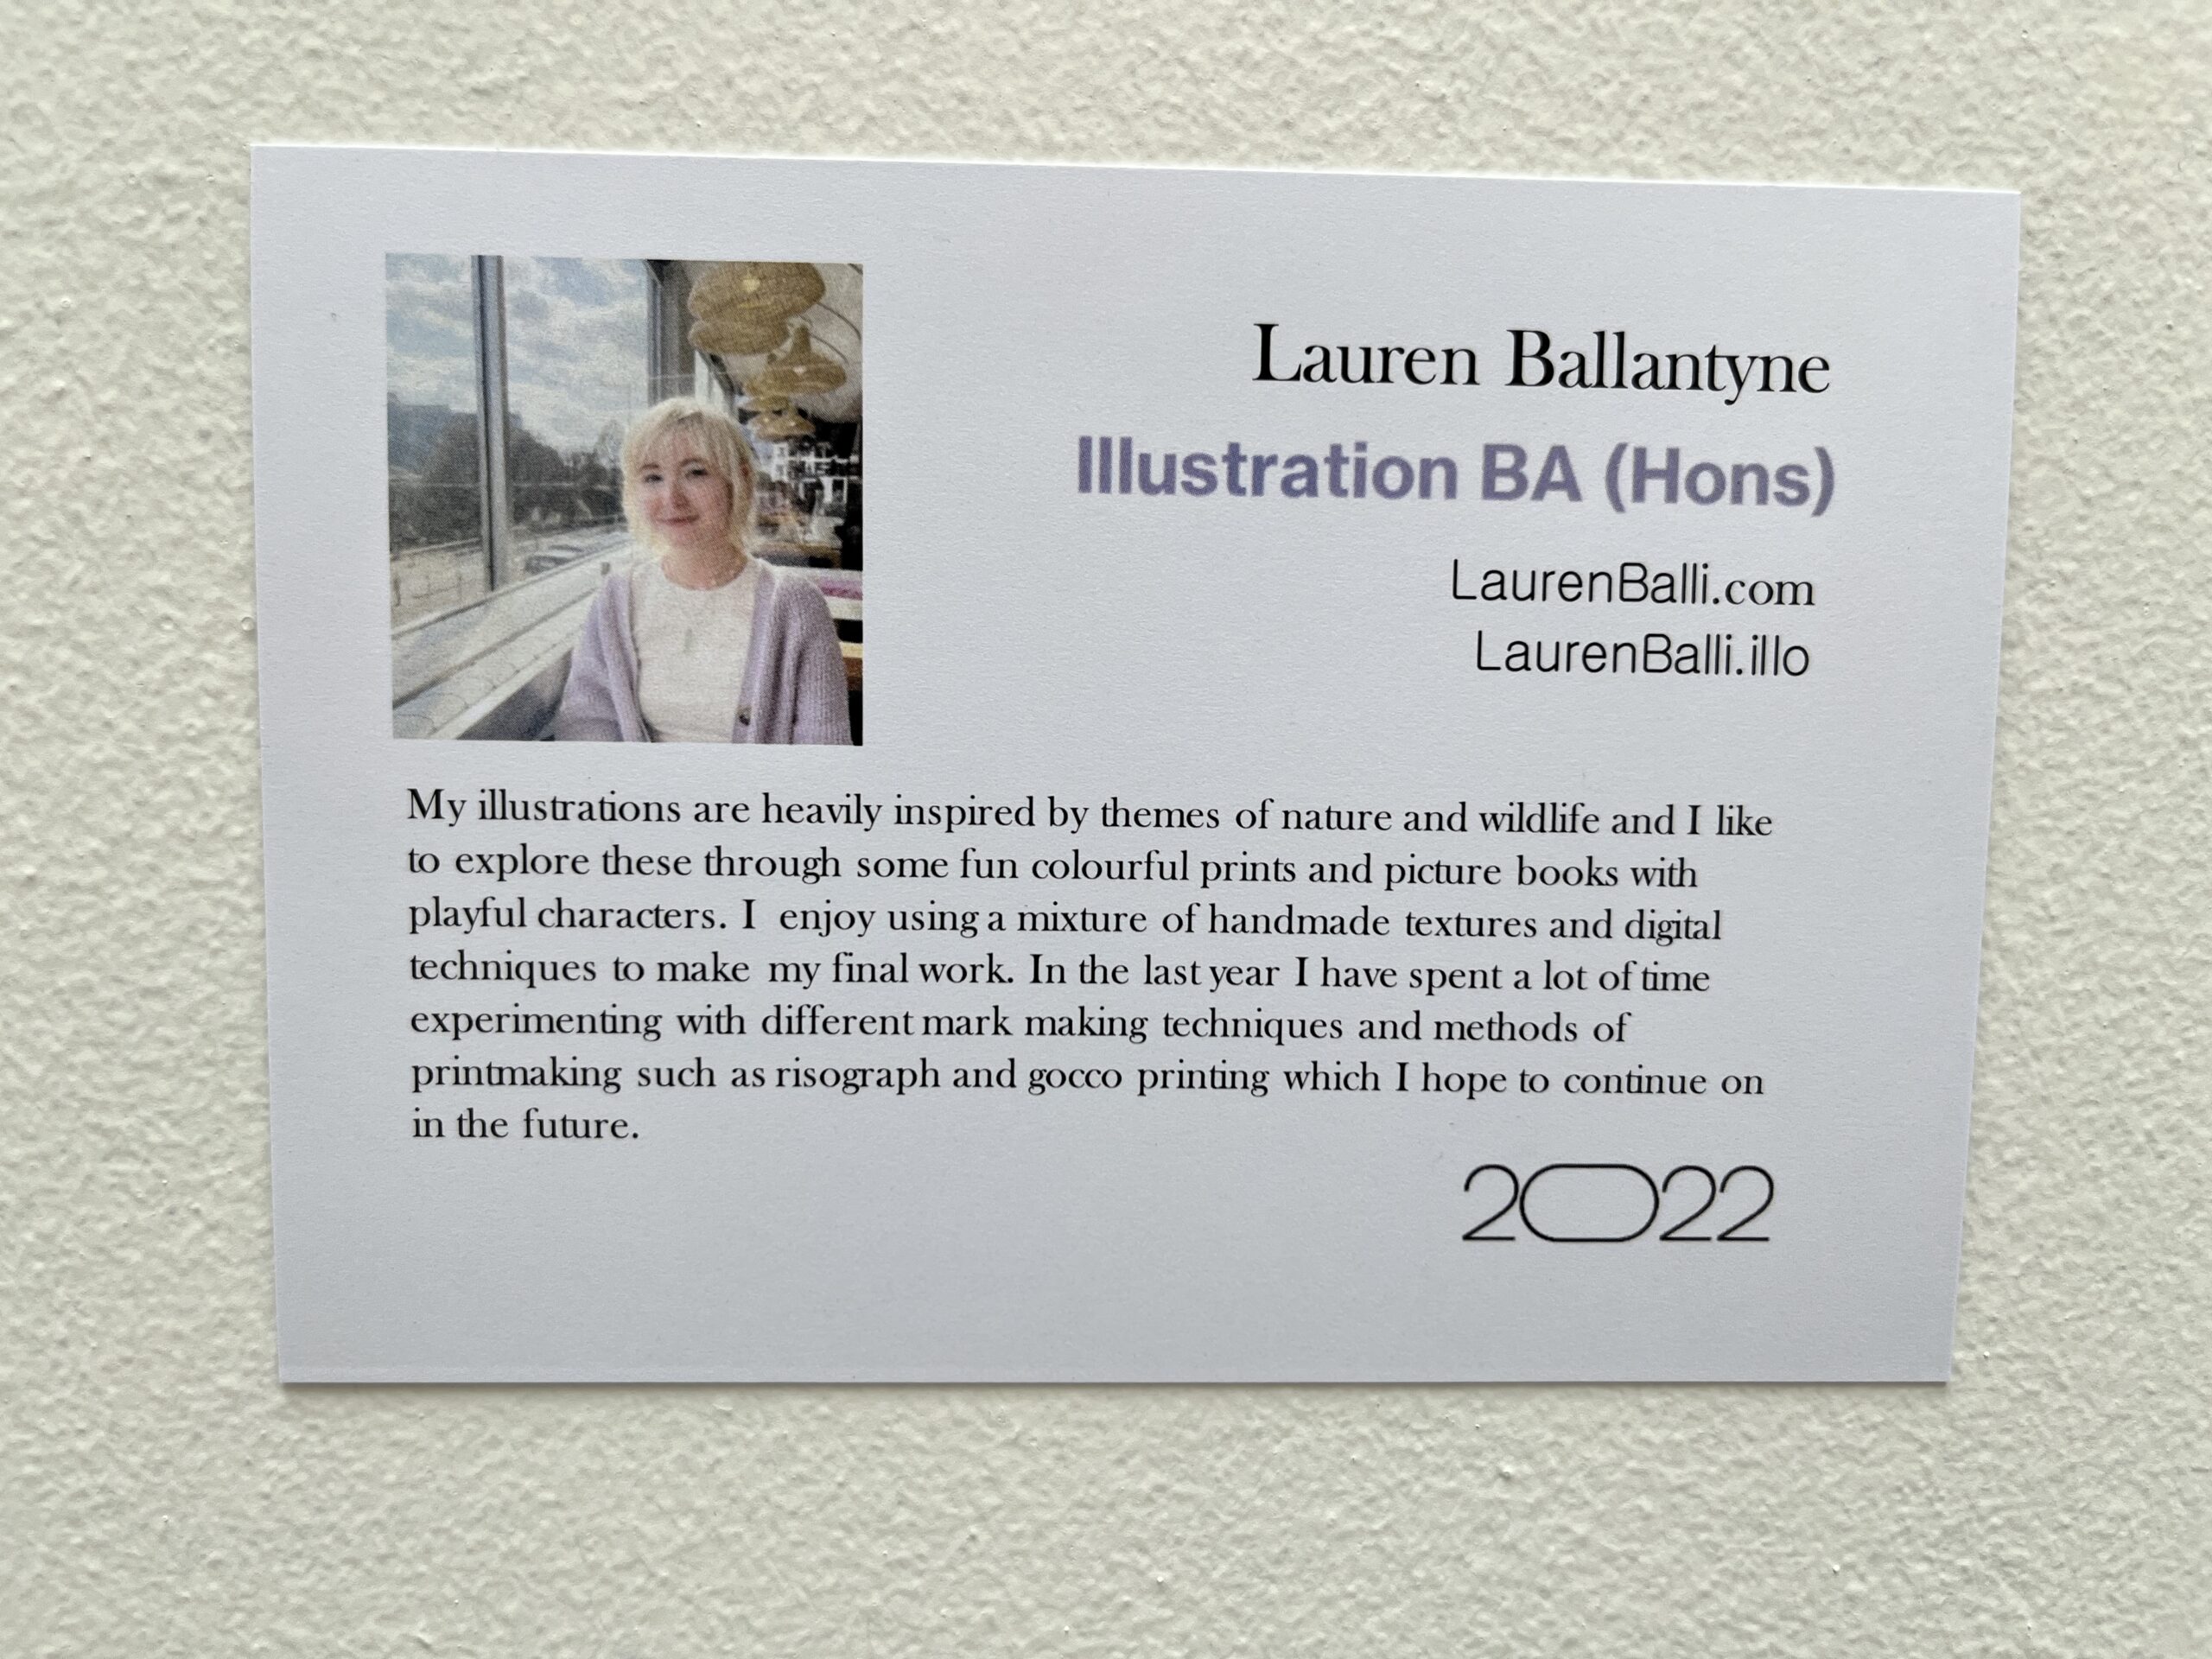 Lauren Ballantyne Exhibition